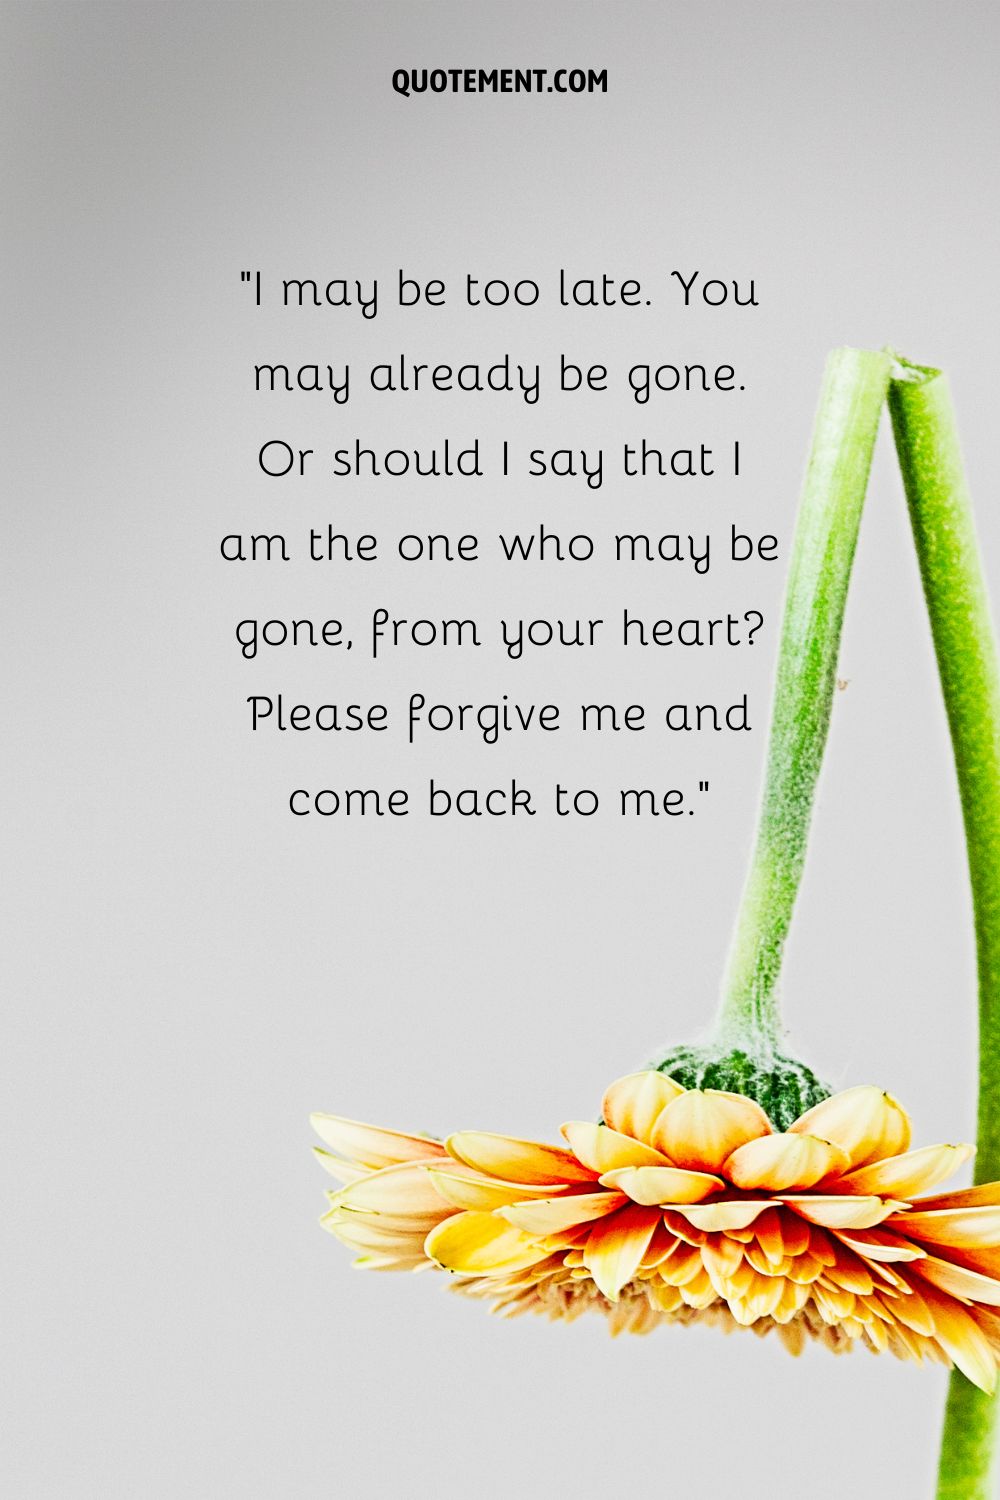 Una flor de gerbera con un tallo roto que representa el mensaje de perdón emocional superior para el novio